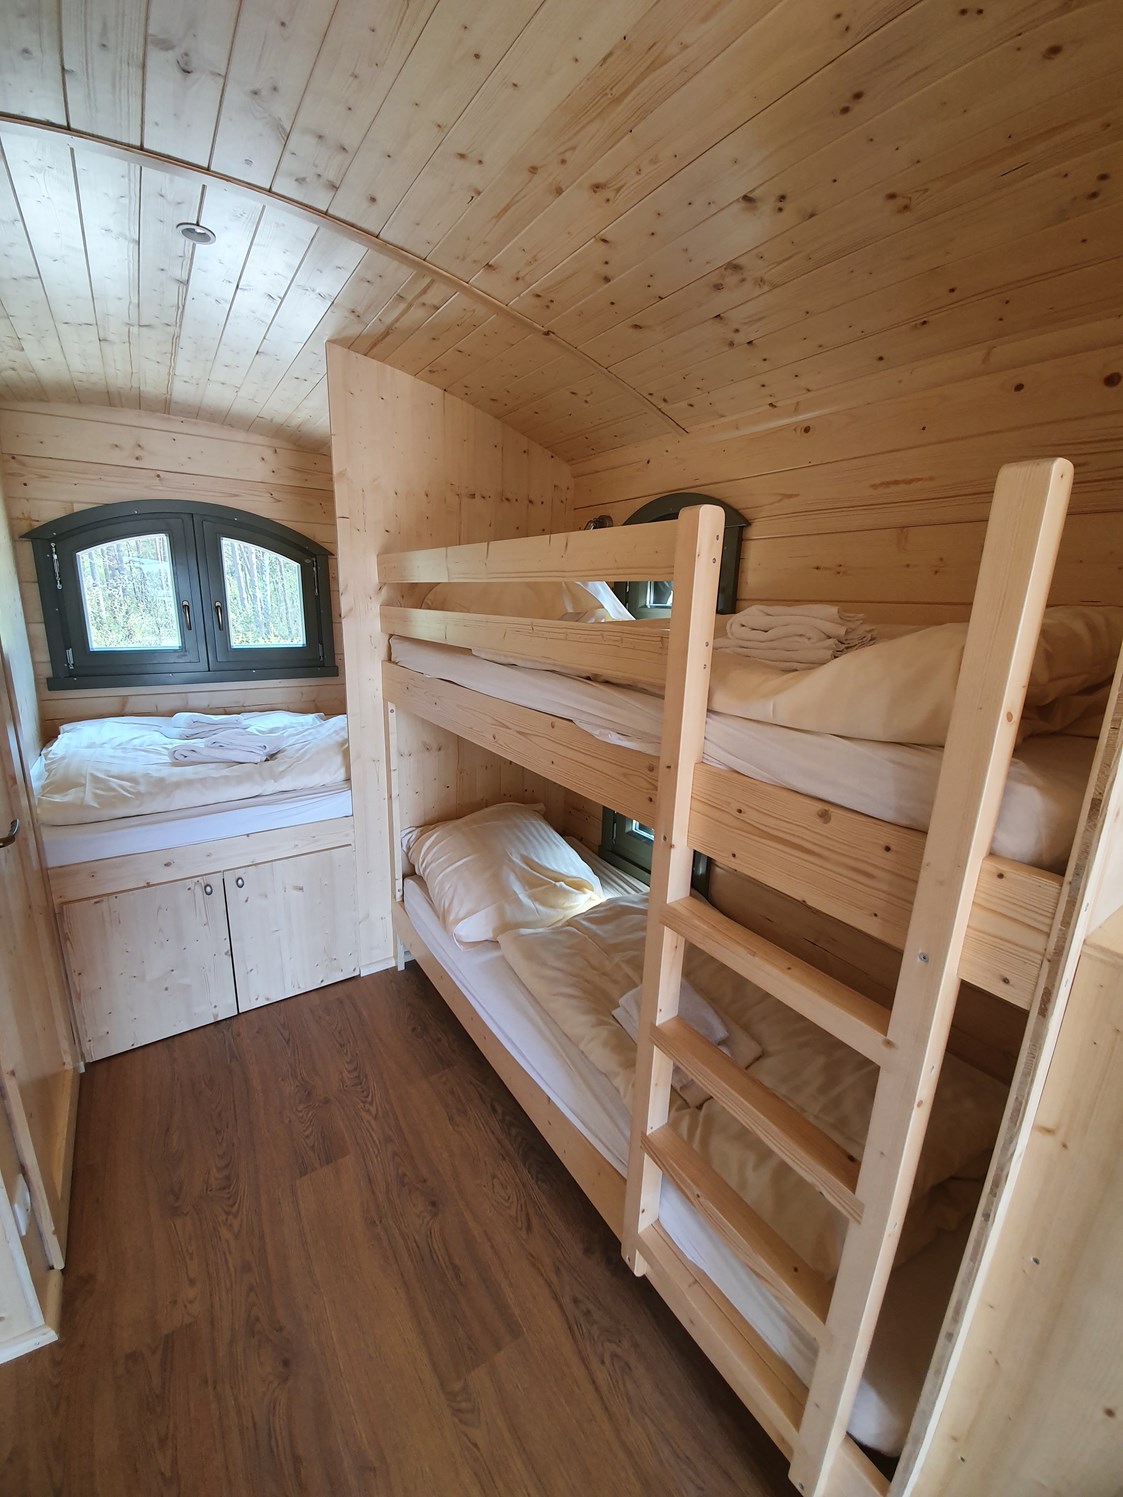 Glampingunterkunft: Betten - Schäferwagen auf Campingplatz "Auf dem Simpel" 